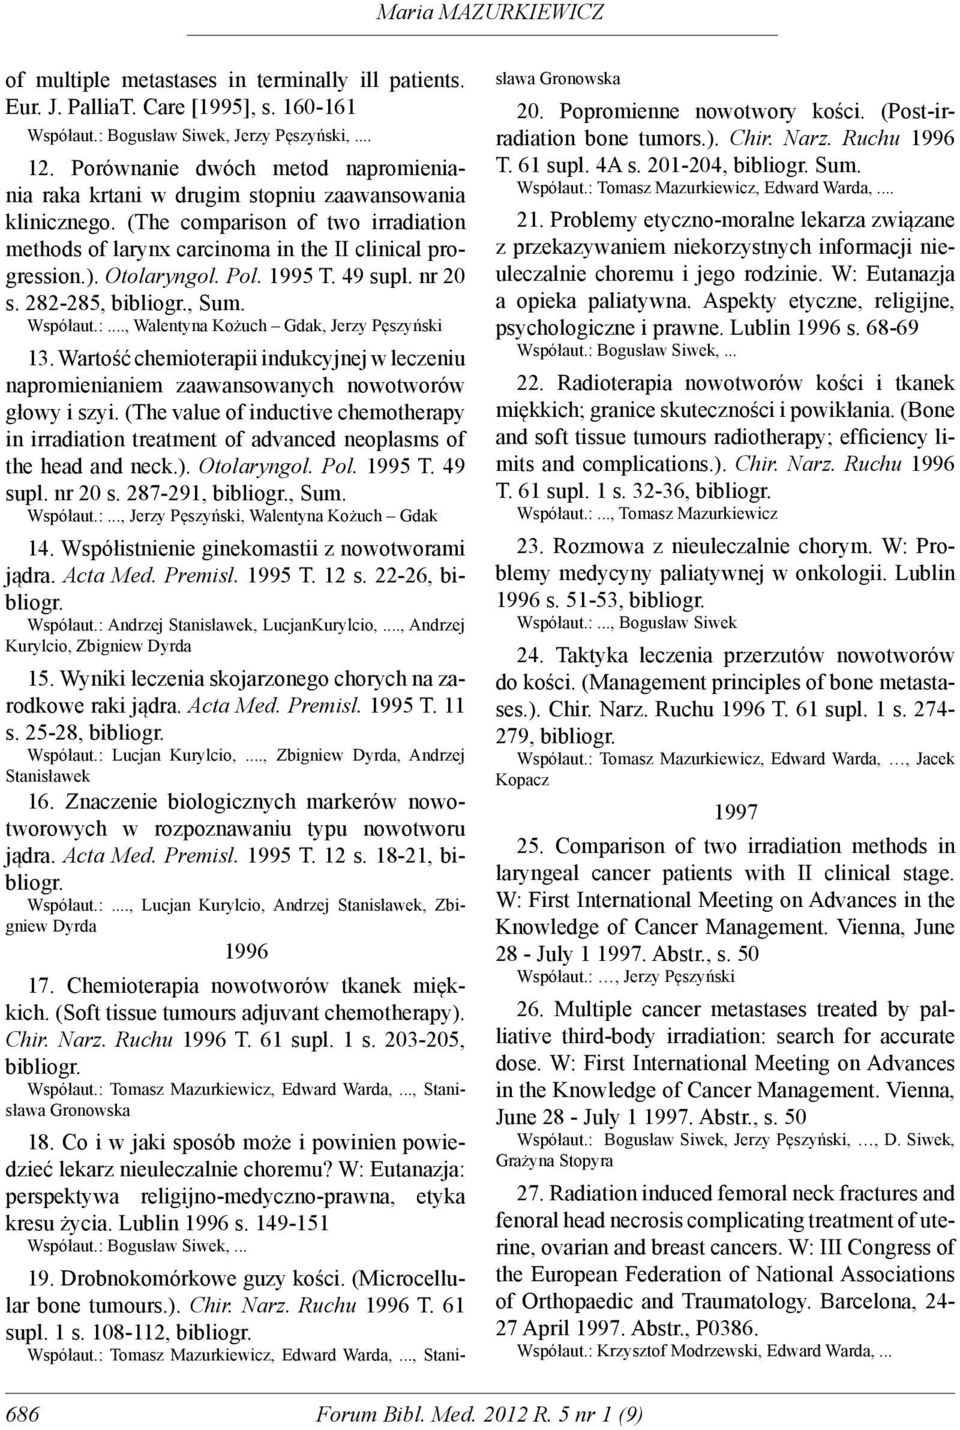 Otolaryngol. Pol. 1995 T. 49 supl. nr 20 s. 282-285, bibliogr., Sum. Współaut.:., Walentyna Kożuch Gdak, Jerzy Pęszyński 13.